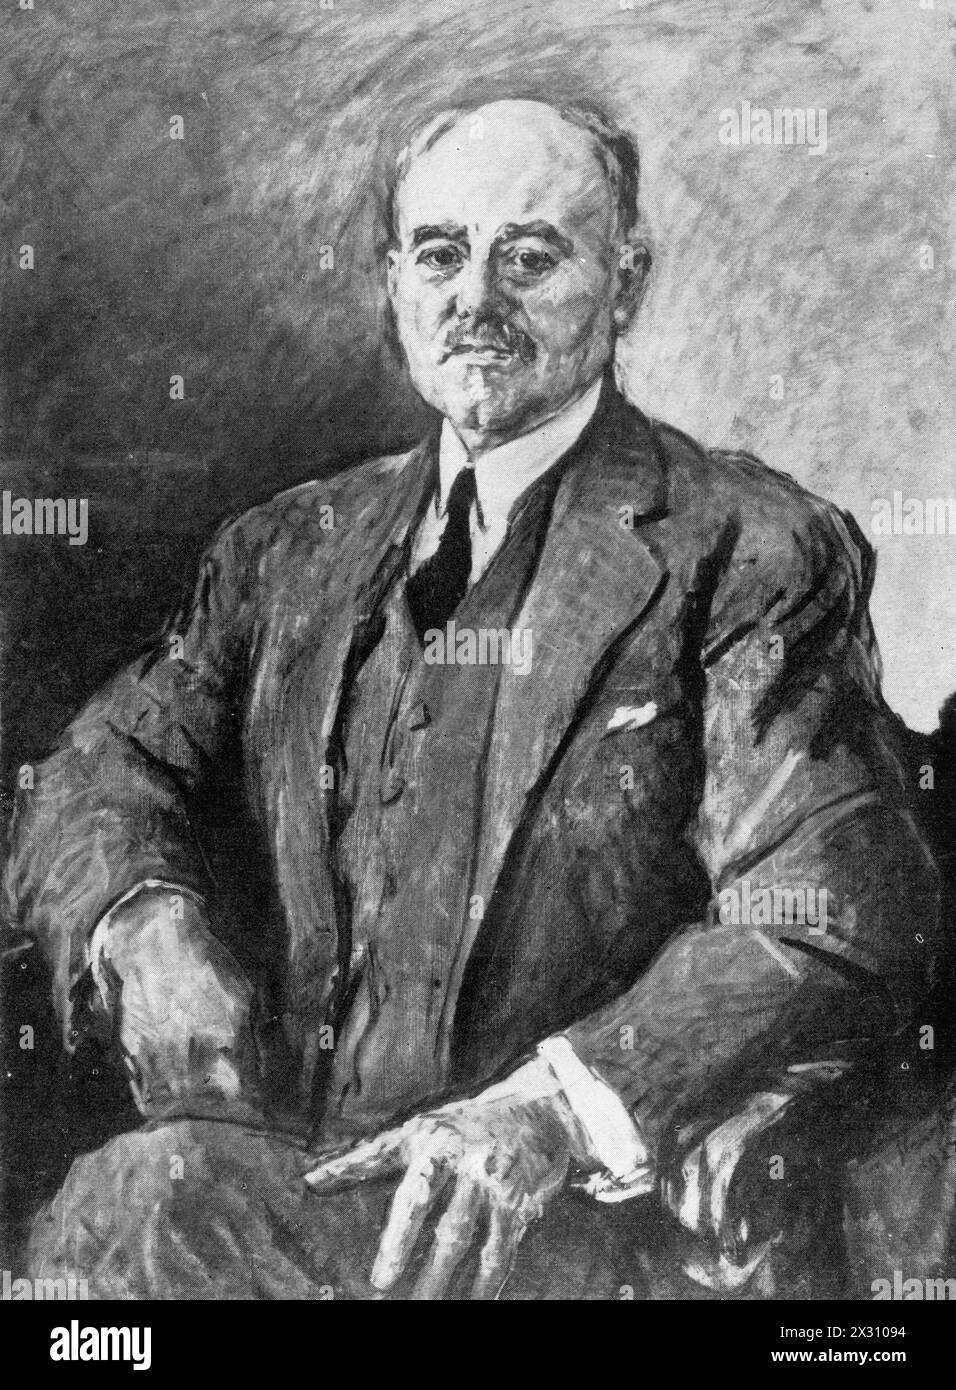 Sudermann, Hermann, 30.9.1857 - 21.11.1928, écrivain allemand, tirage basé sur une peinture de Max Slevogt, ADDITIONAL-RIGHTS-CLEARANCE-INFO-NOT-AVAILABLE Banque D'Images